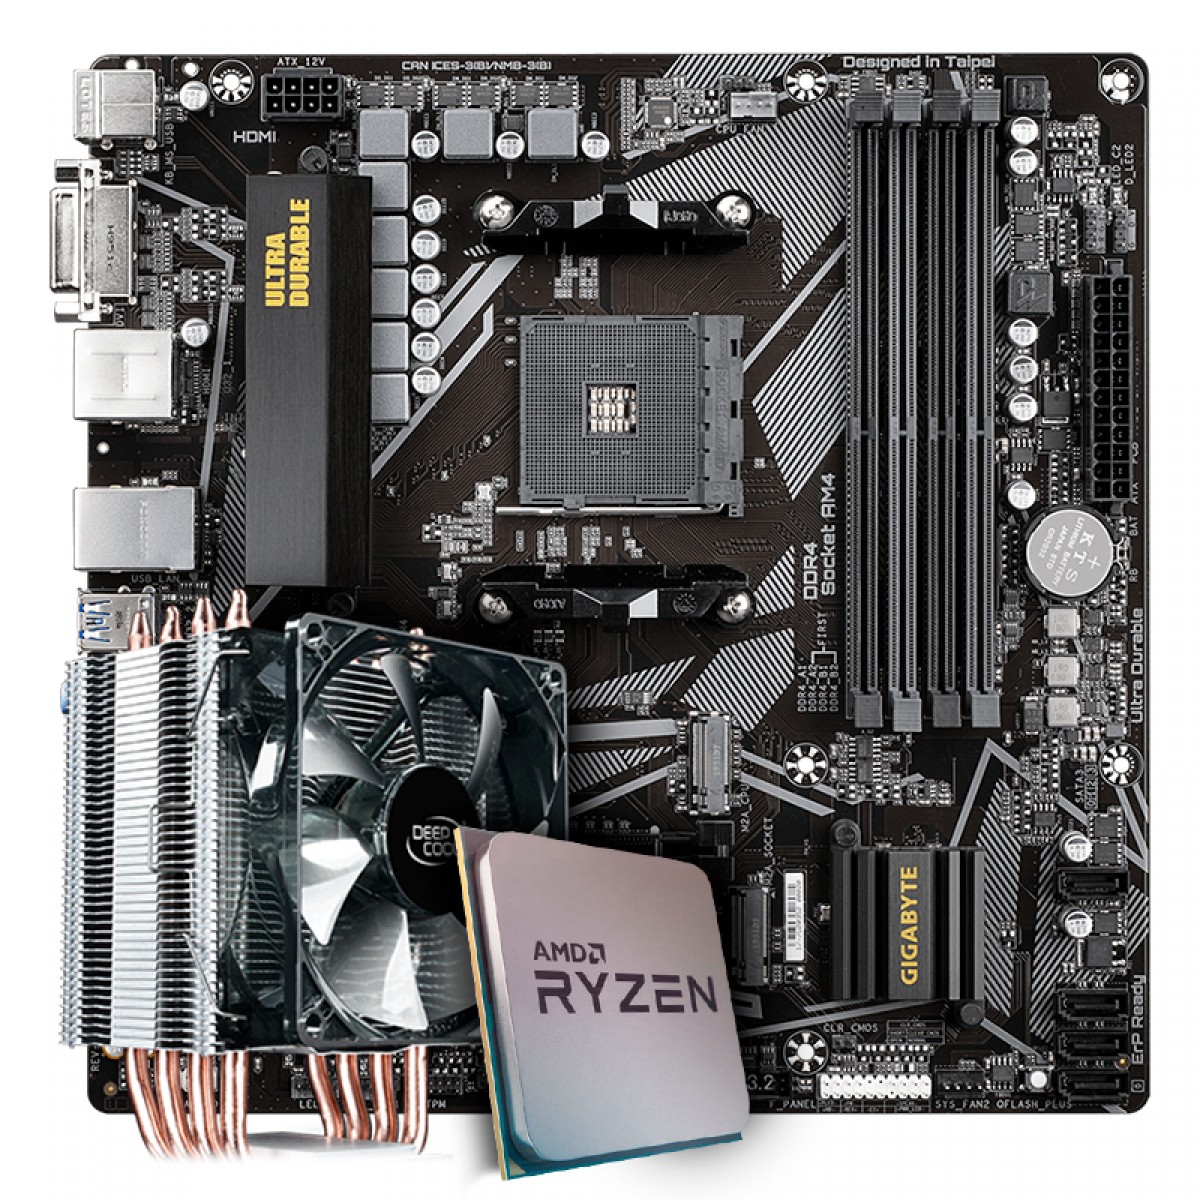 Kit Upgrade Placa Mãe Gigabyte B550M DS3H, Chipset B550 AMD AM4 + Processador AMD Ryzen 9 3900x 3.8GHz + Cooler Deepcool Gammaxx